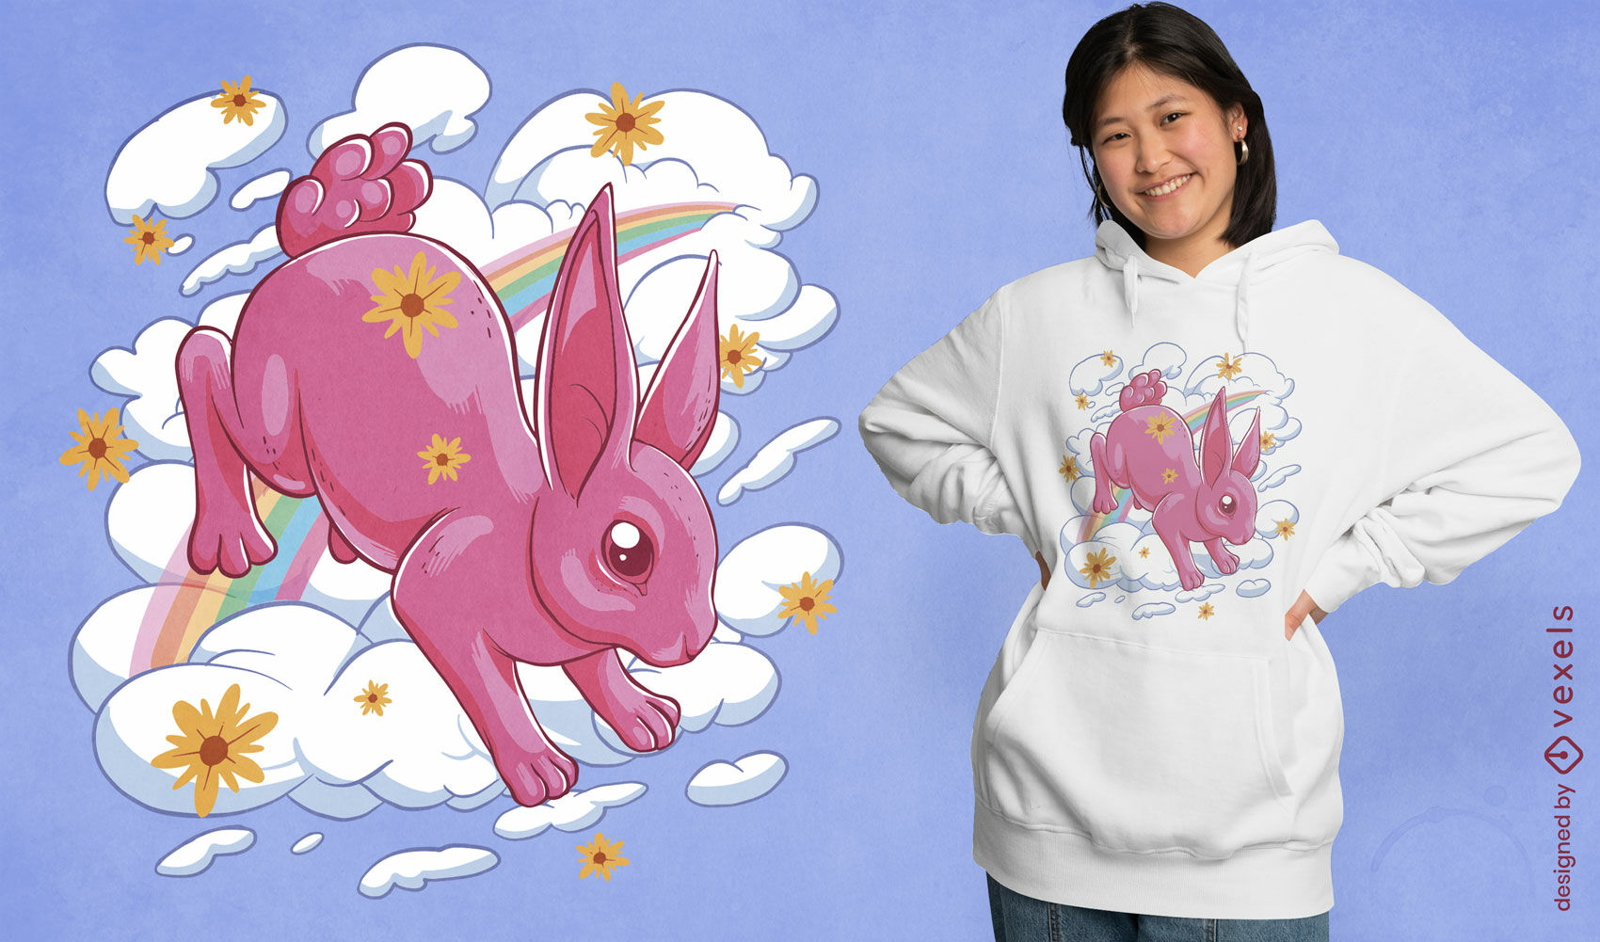 Dise?o de camiseta de conejo rosa en la nube.